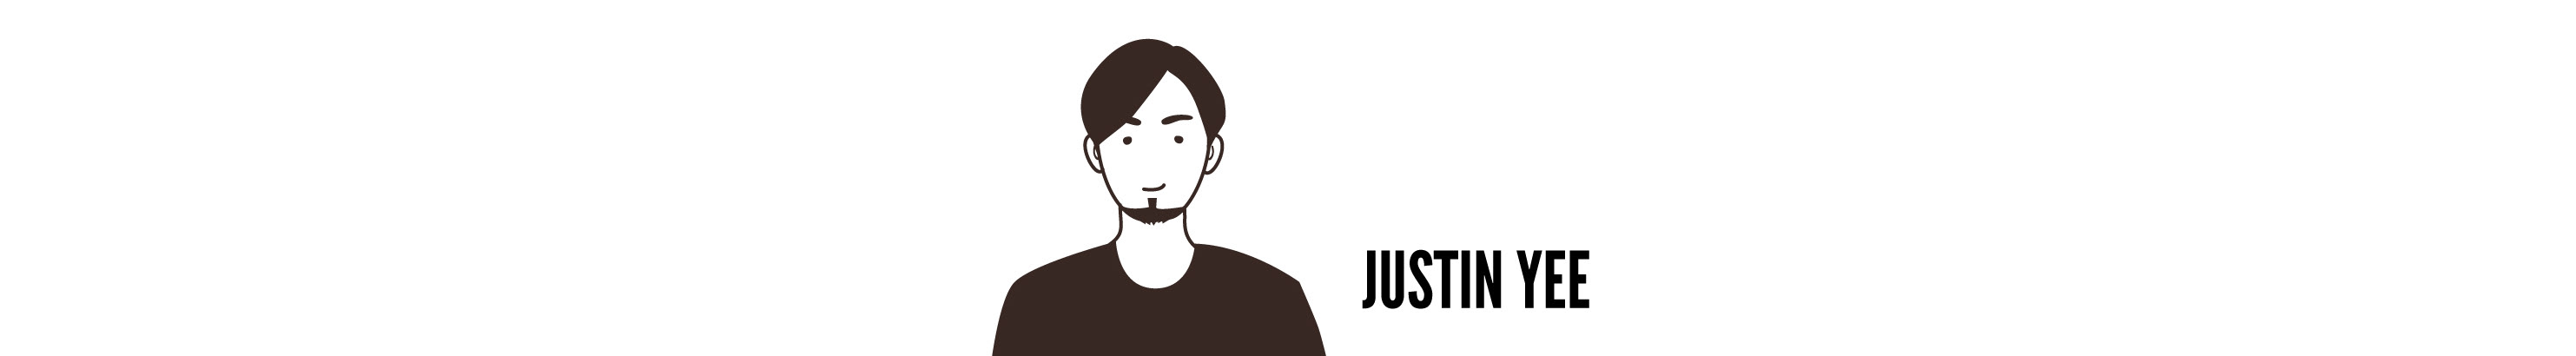 Bannière de profil de Justin Yee